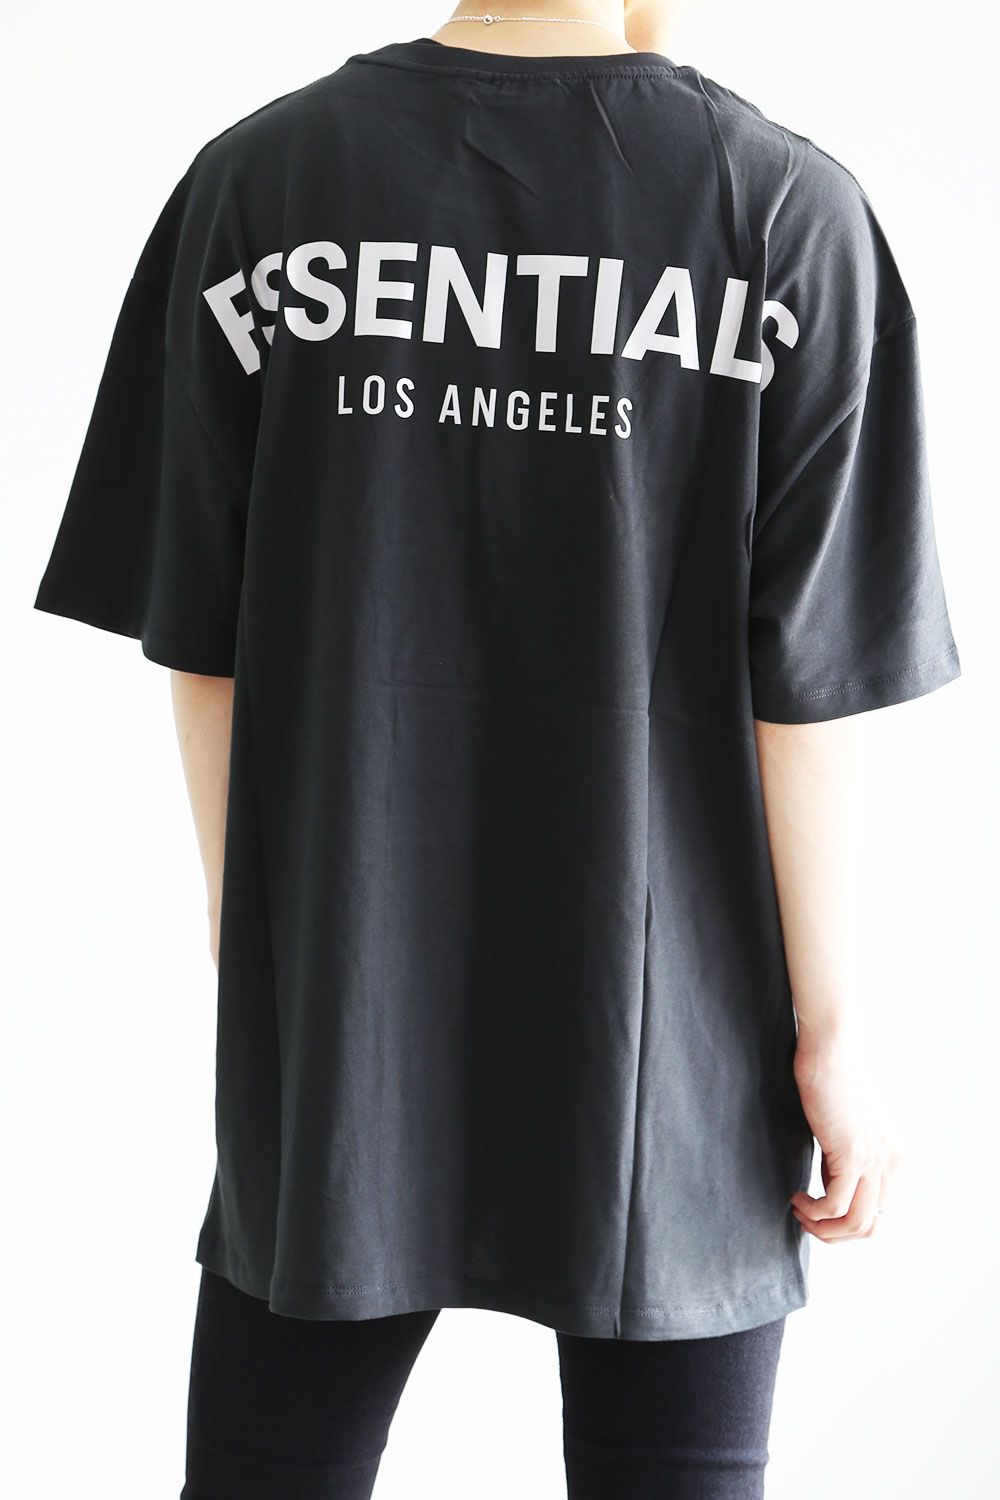 トップス【新品未使用】FOG ESSENTIALS T-Shirt LA限定 S